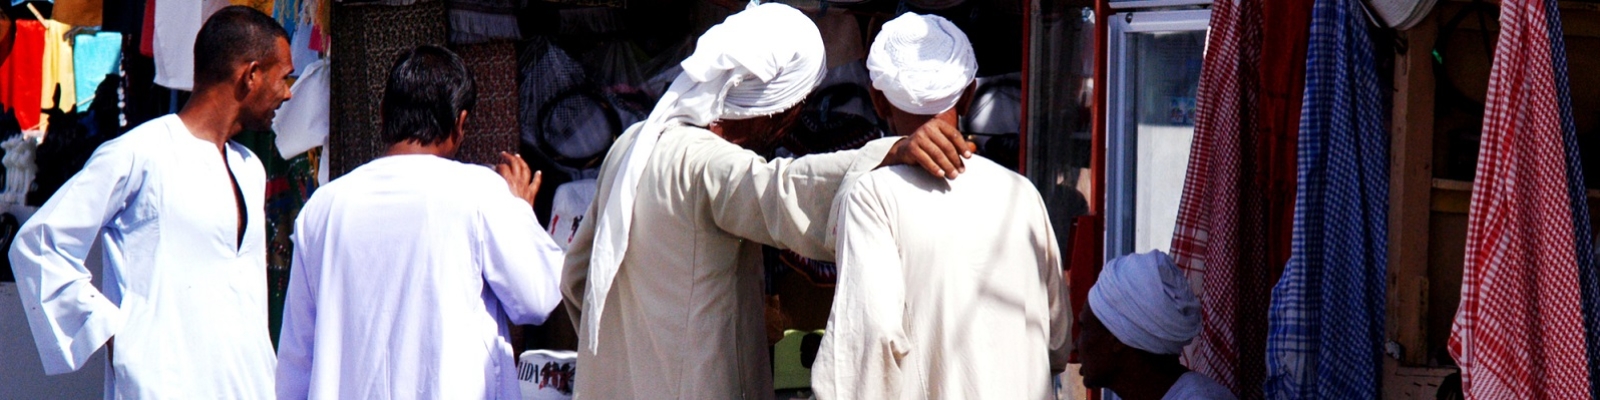 Бывший сонник мусульманский. Белоснежная одежда пророка. Белый одеяния в Хадже.